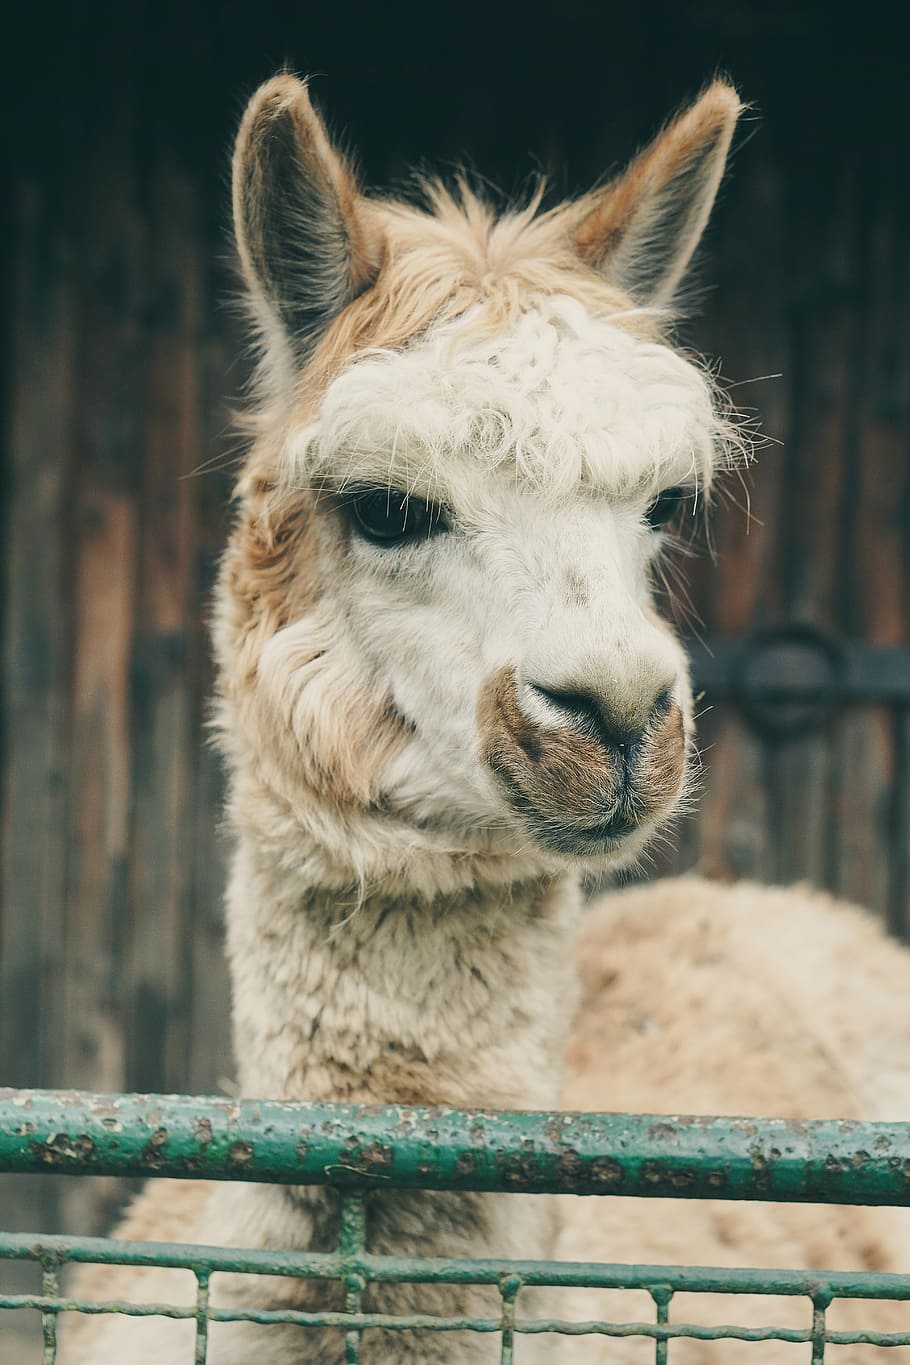 lama, alpaca, captivity, black and white, fence, zoo, wildlife photography, sad, locked up, fencing